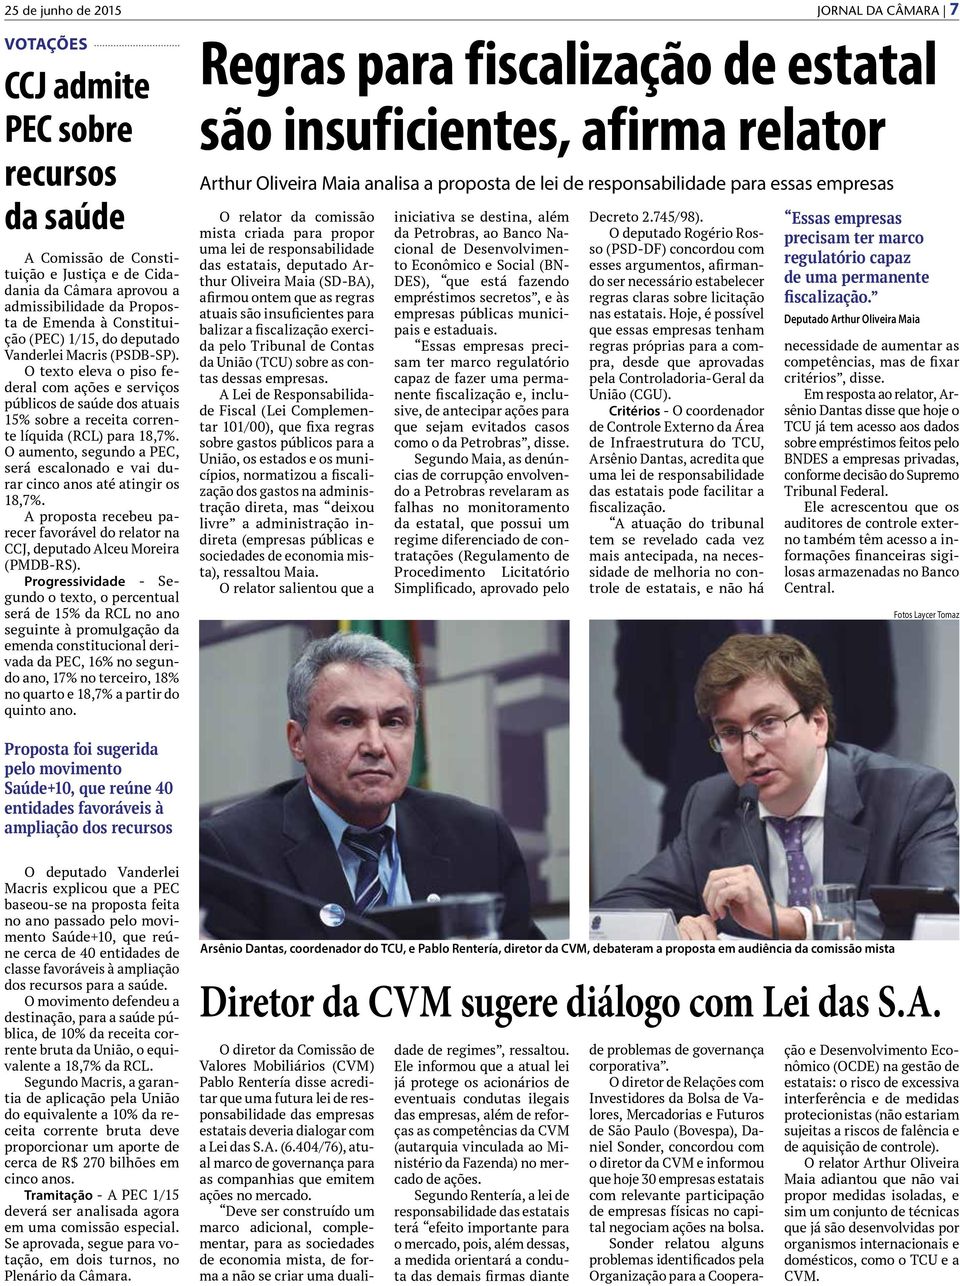 O aumento, segundo a PEC, será escalonado e vai durar cinco anos até atingir os 18,7%. A proposta recebeu parecer favorável do relator na CCJ, deputado Alceu Moreira (PMDB-RS).